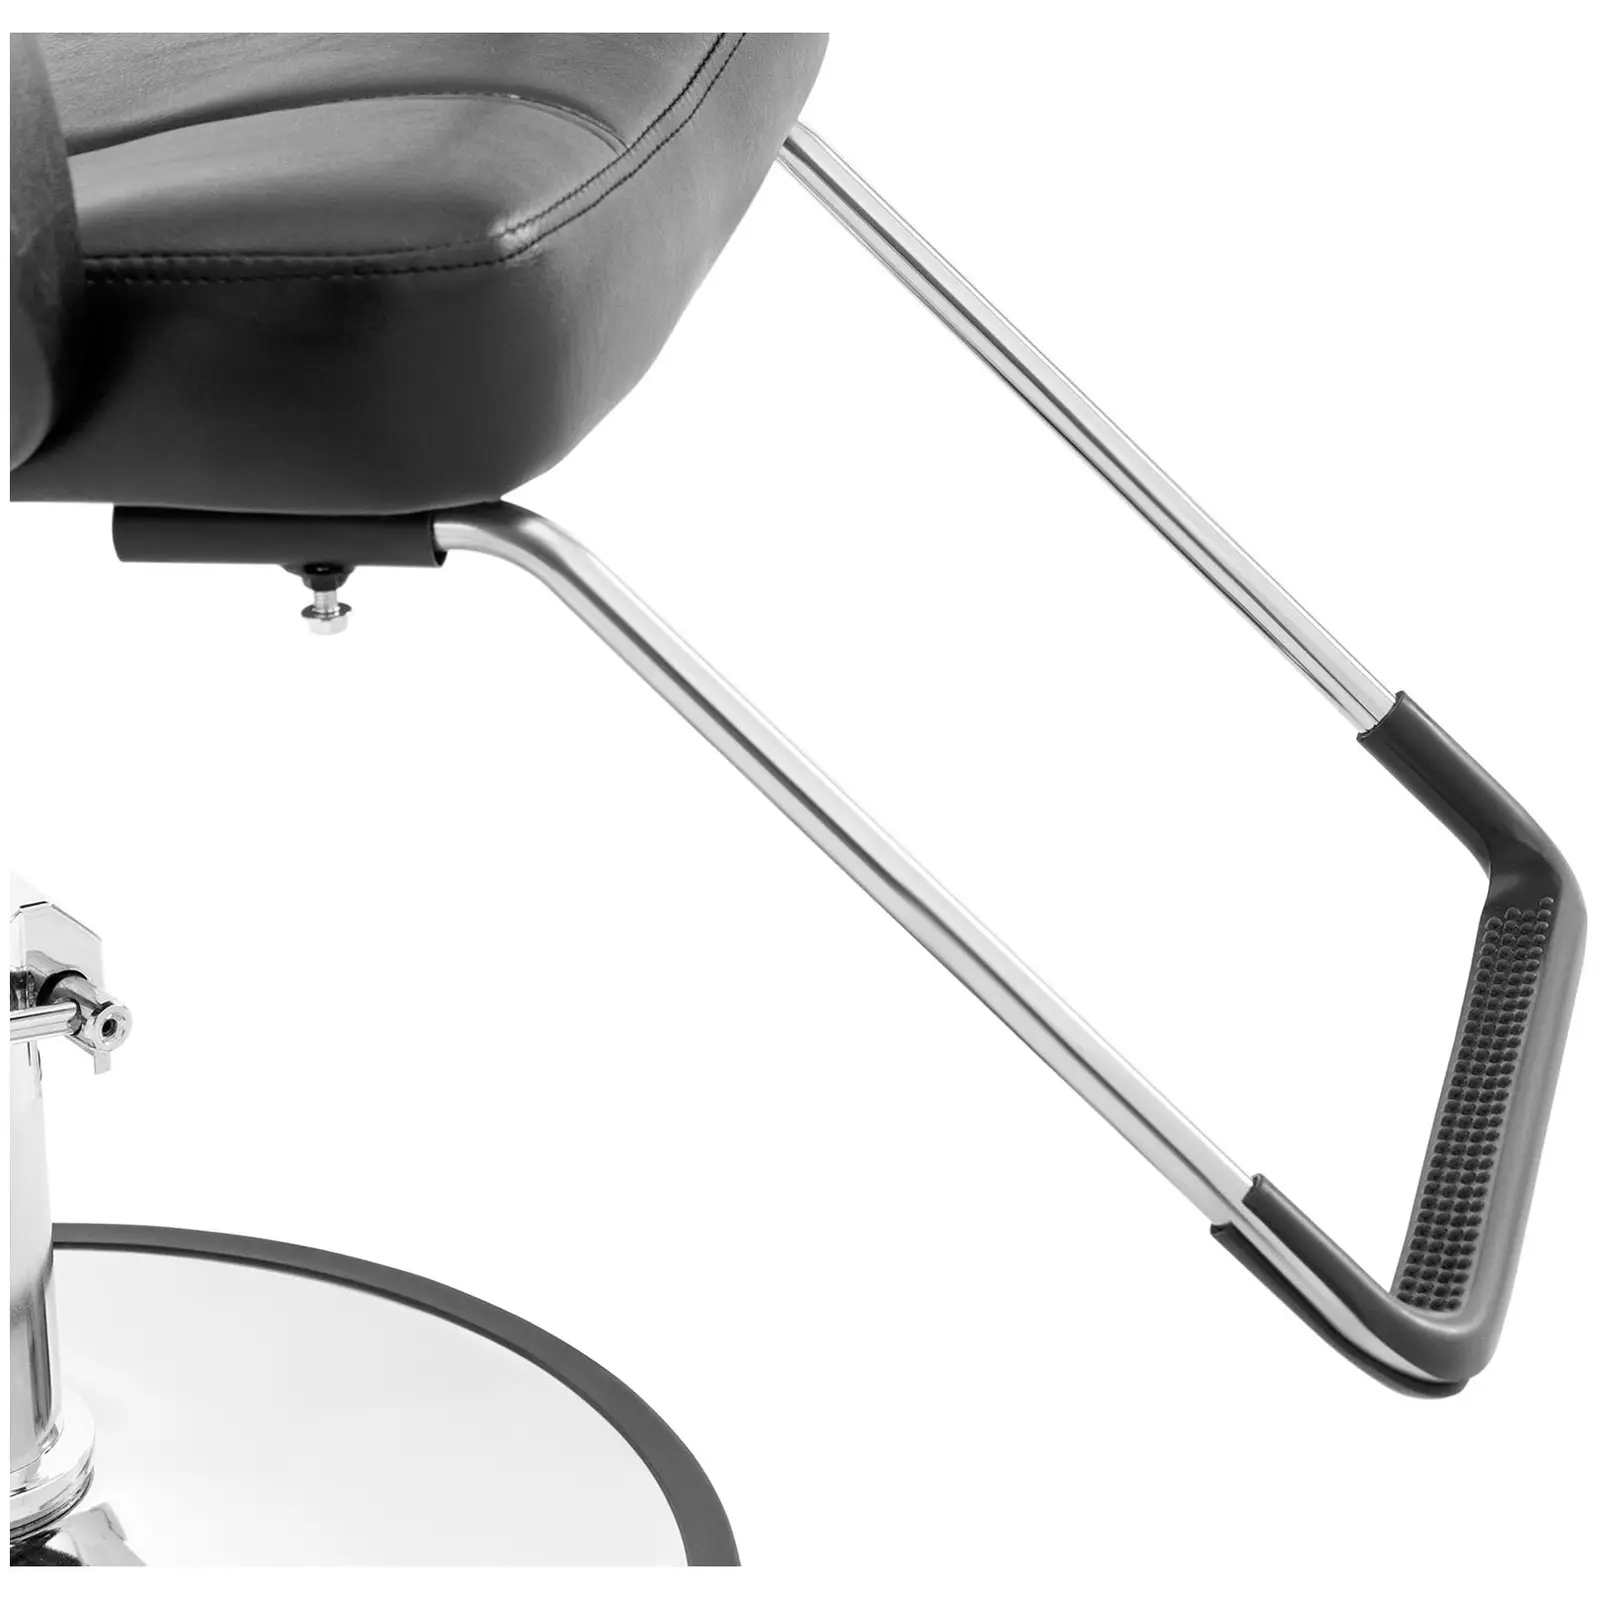 Salon chair - Footrest - 50 - 64 cm - 170 kg - black